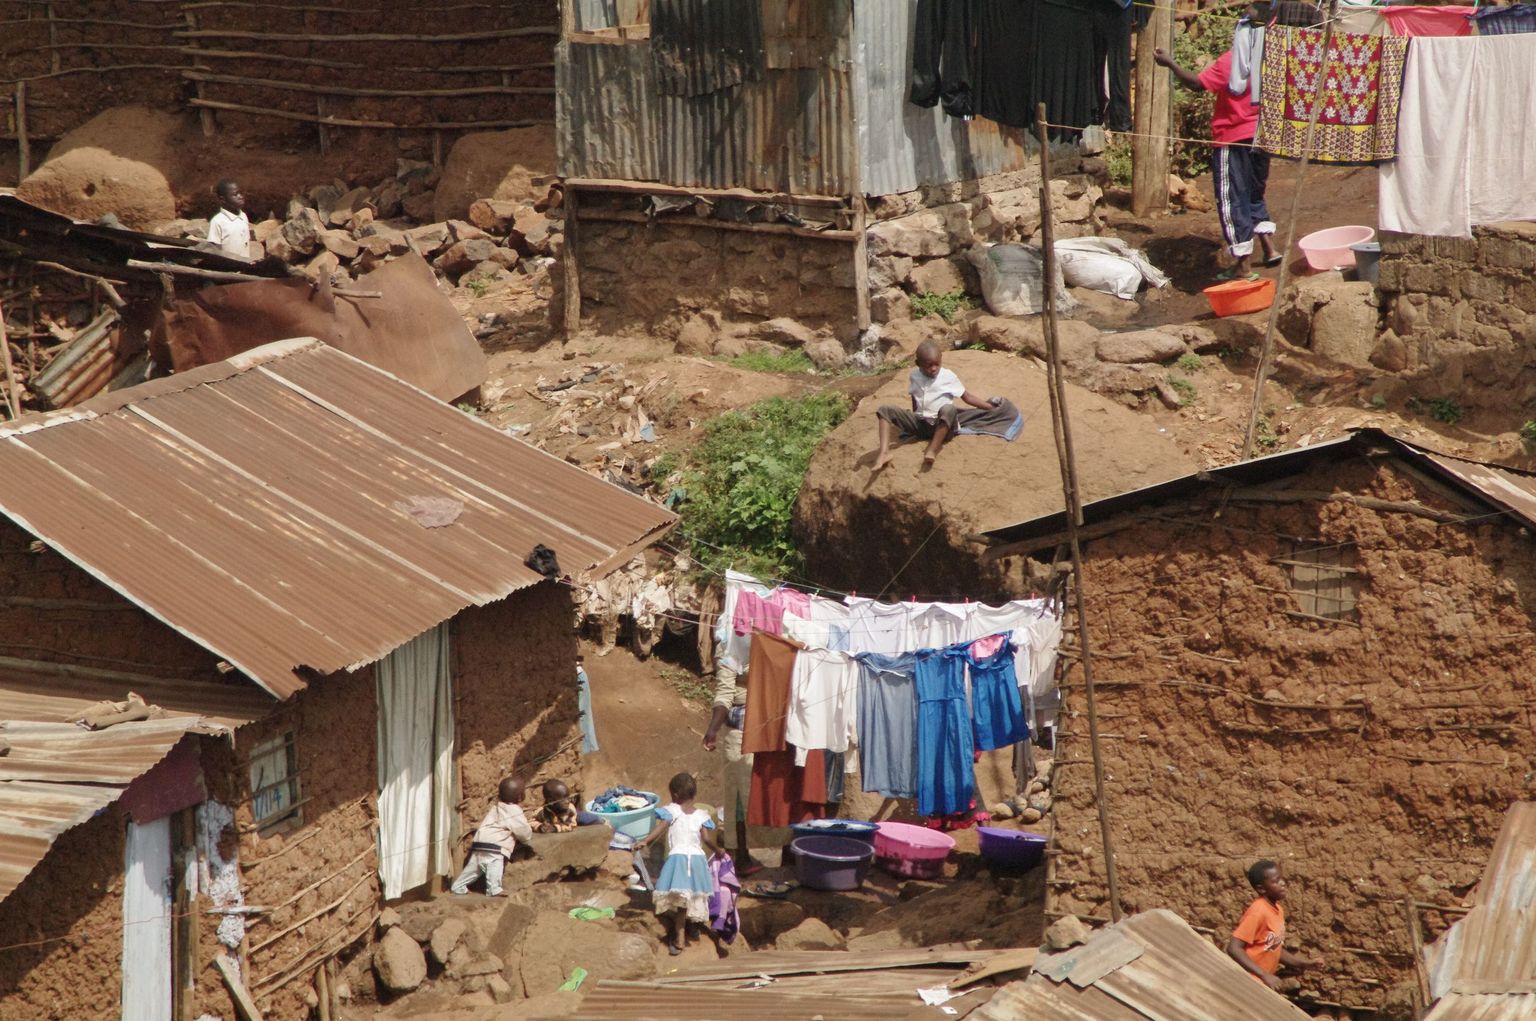 Hingemattev vaesus Nairobis Kibera slummi kitsastel radadel, kus on õnnestunud käia väga vähestel eestlastel. Foto on illustreeriv